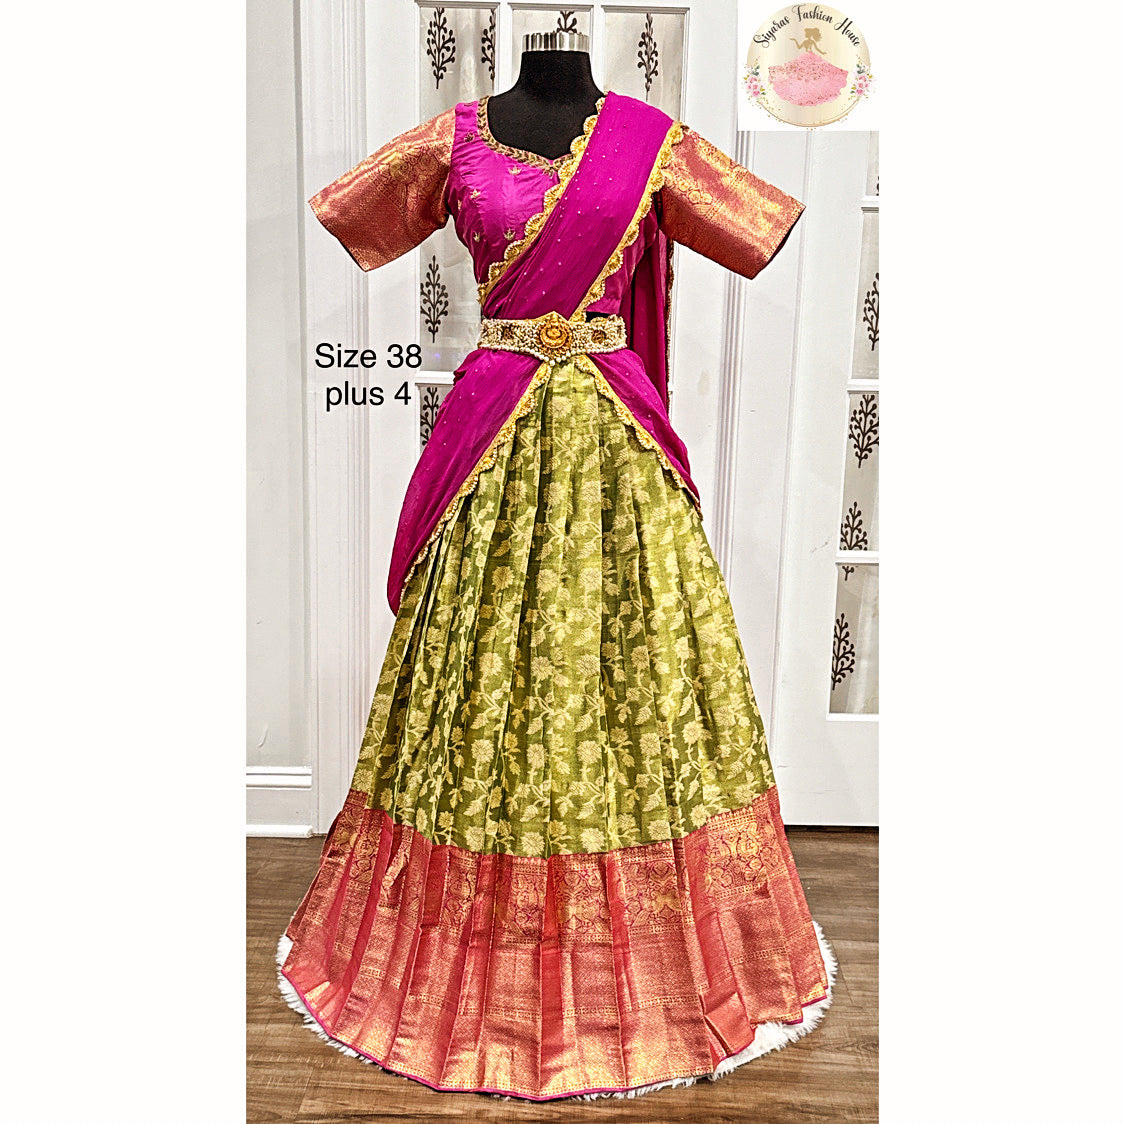 Beautiful half saree with Green banarasi skirt and pink silk blouse with Maggam work.